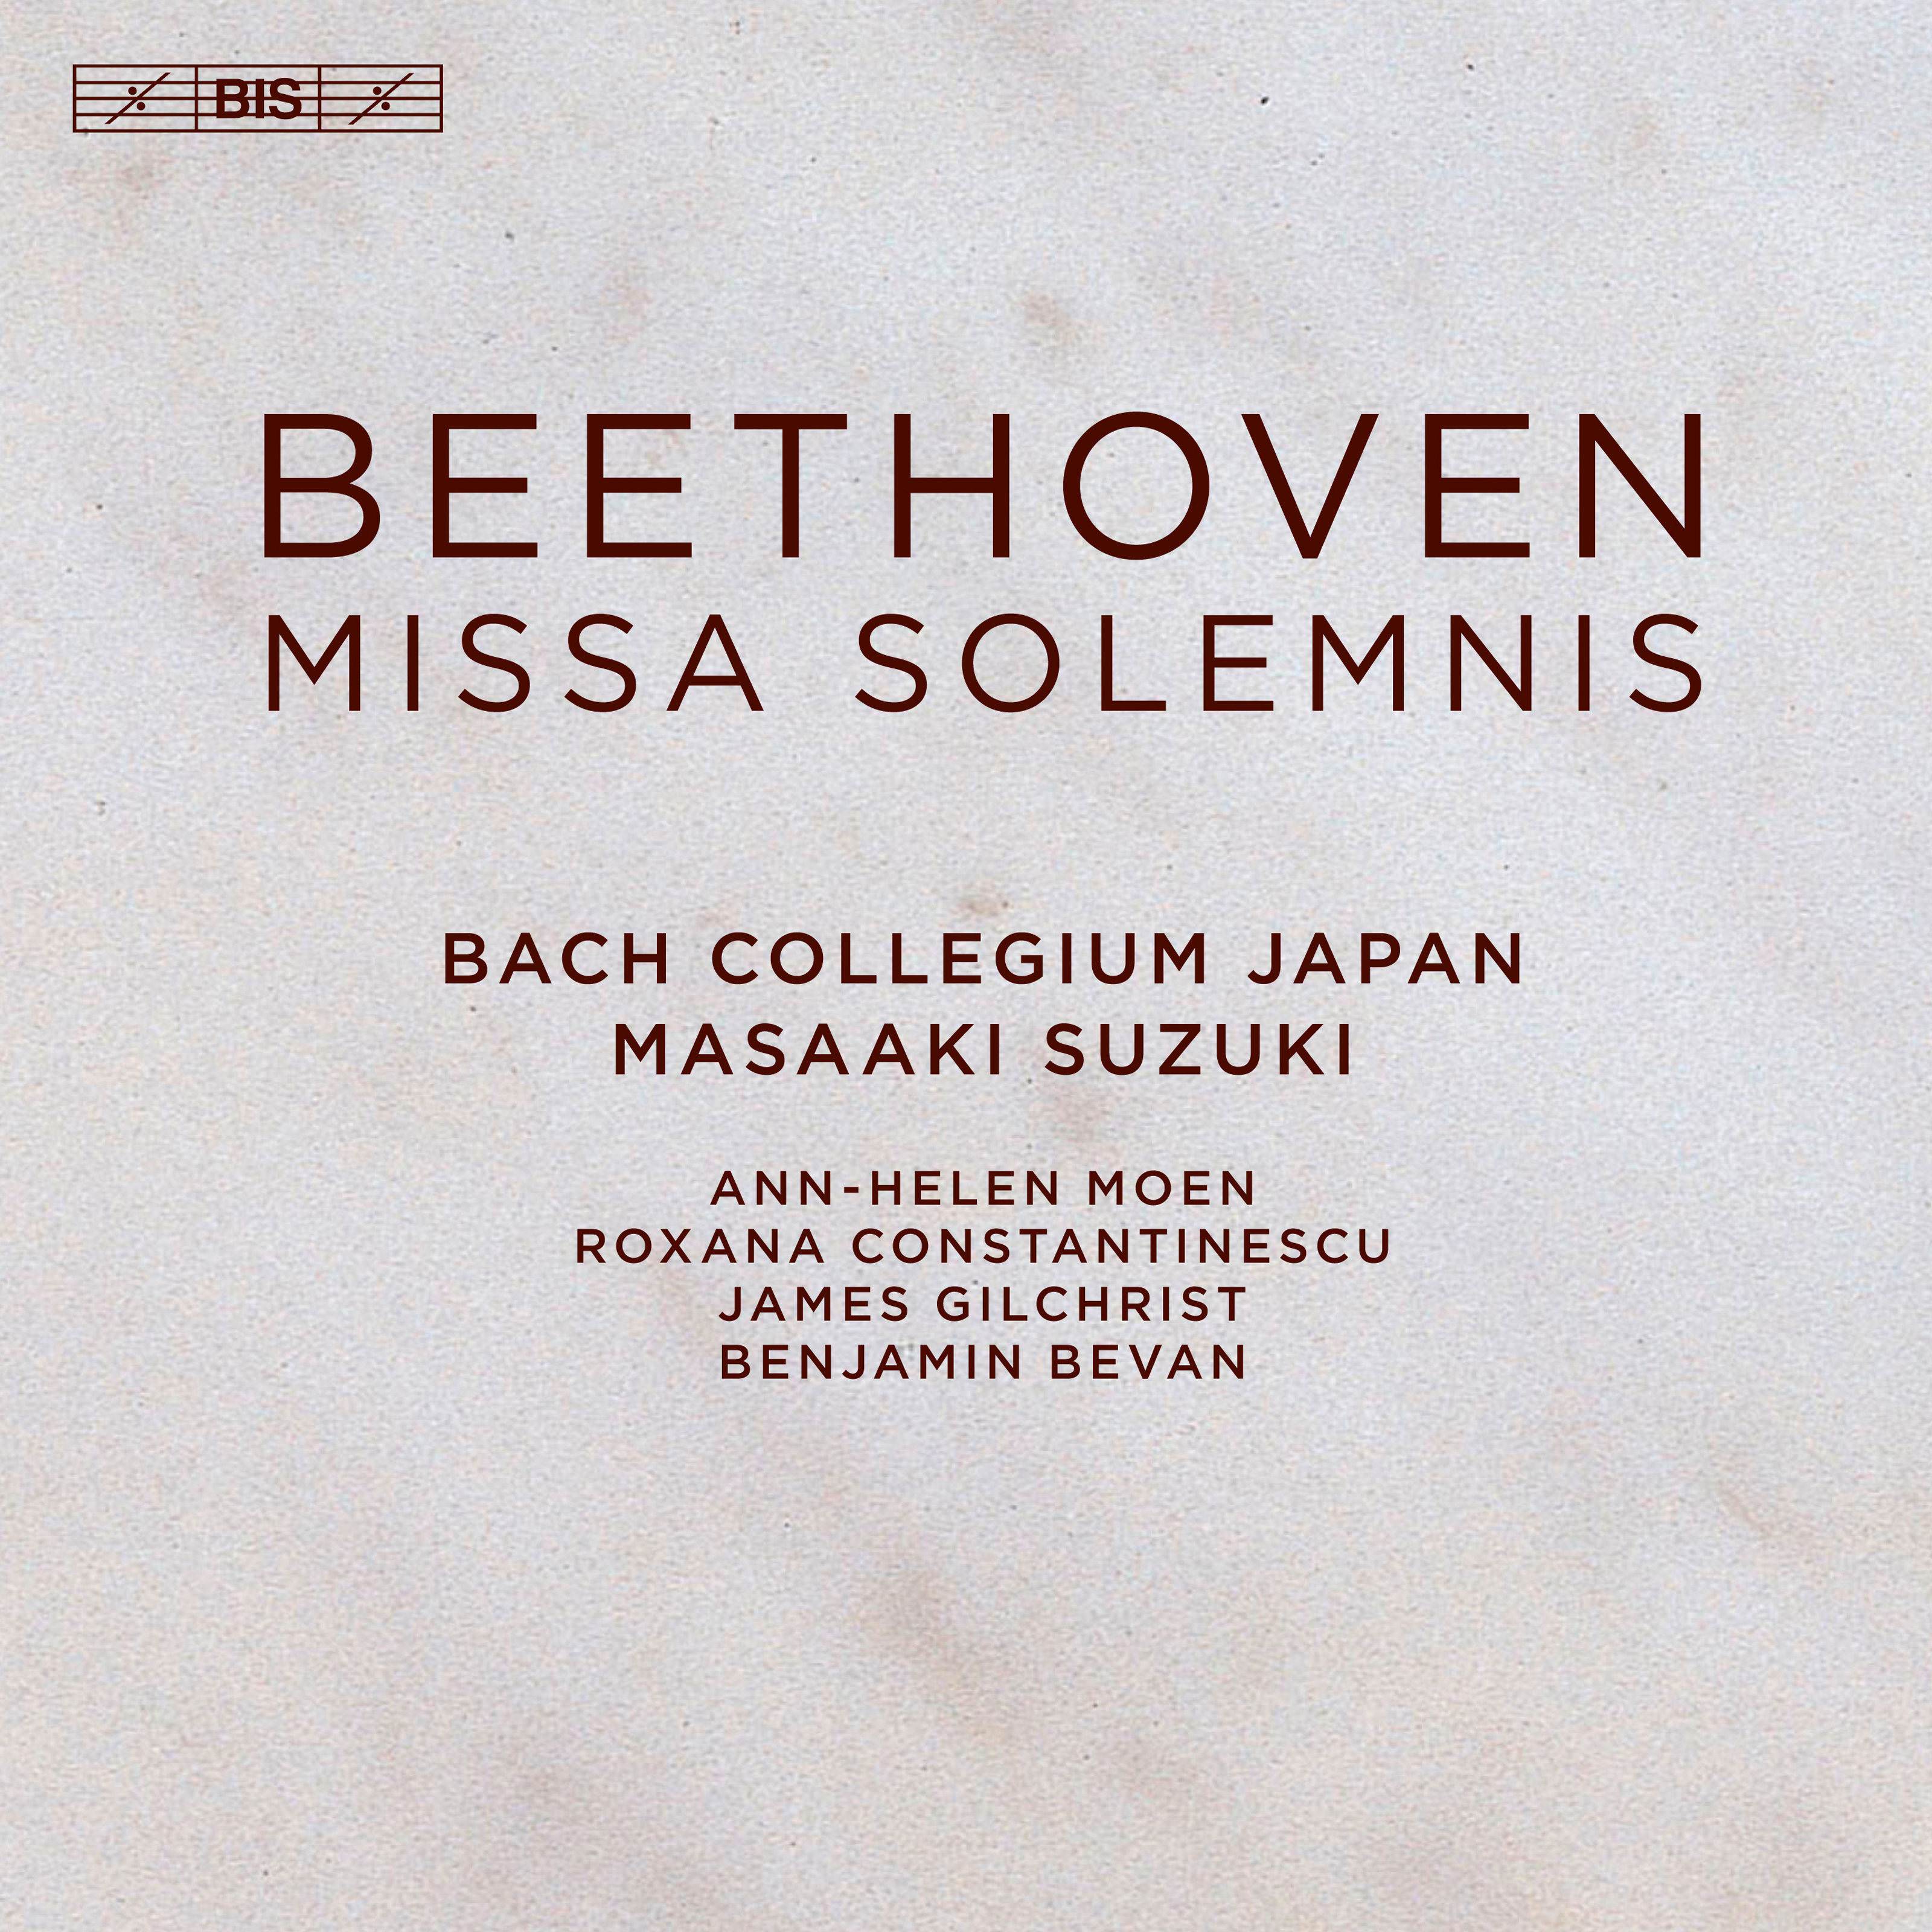 Bach Collegium Japan & Masaaki Suzuki – Beethoven: Missa solemnis, Op. 123 (2018) [FLAC 24bit/96kHz]